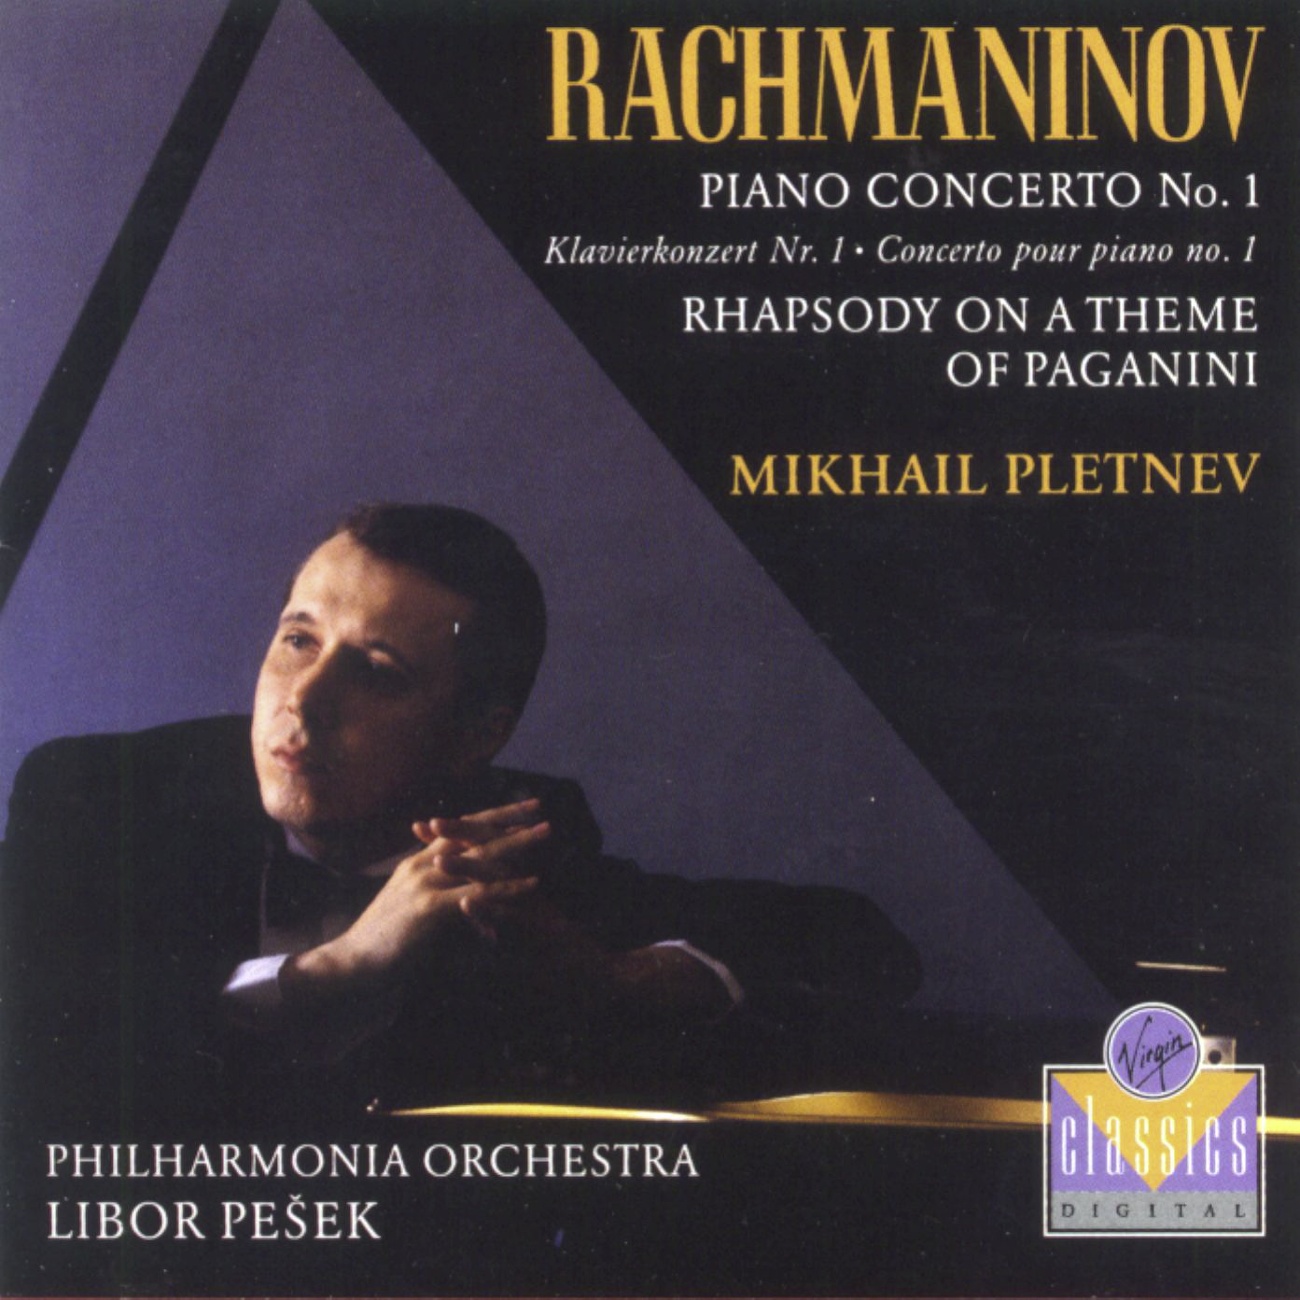 Rhapsody on a Theme of Paganini: Variation V - Tempo precedente